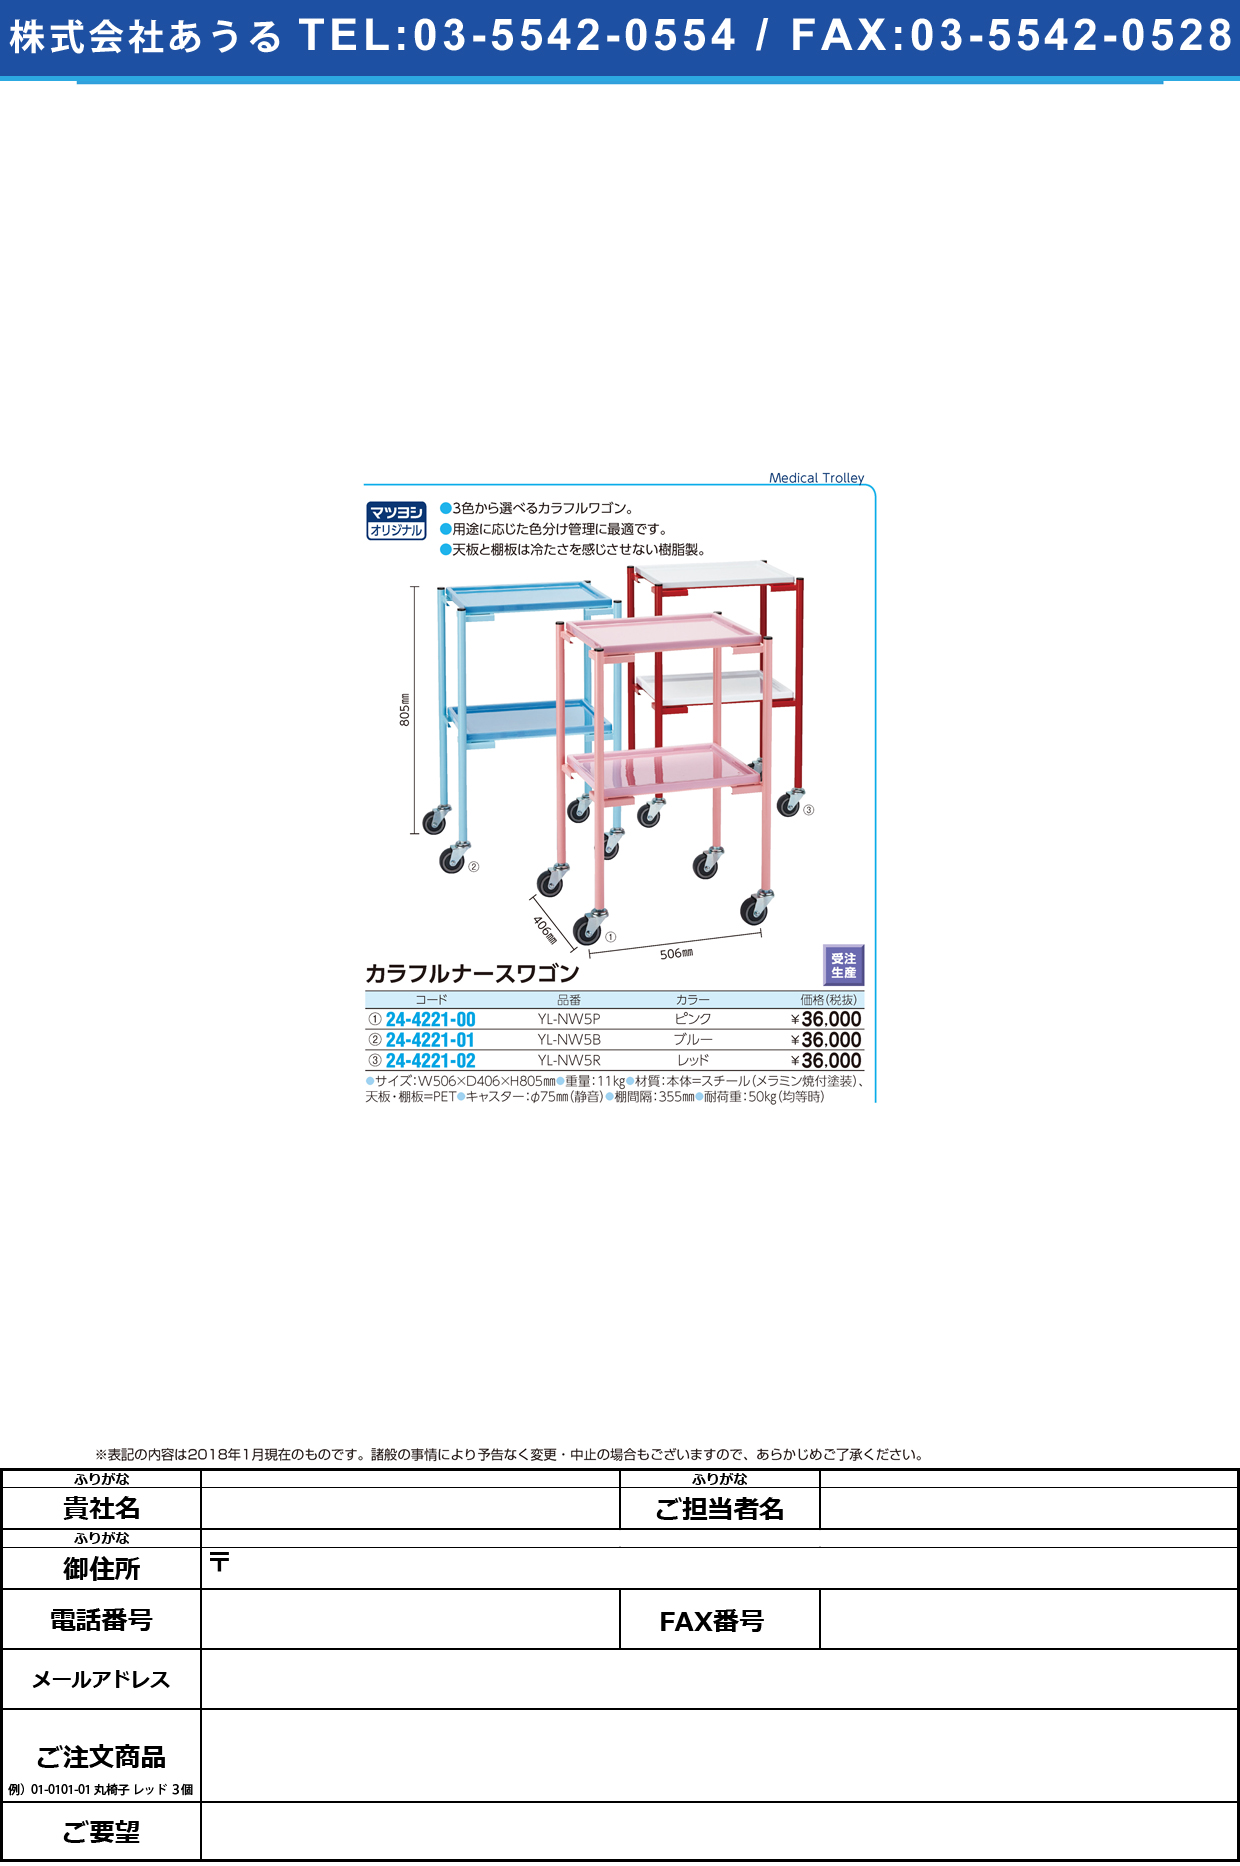 (24-4221-02)カラフルナースワゴン YL-NW5R(ﾚｯﾄﾞ) ｶﾗﾌﾙﾅｰｽﾜｺﾞﾝ【1台単位】【2019年カタログ商品】